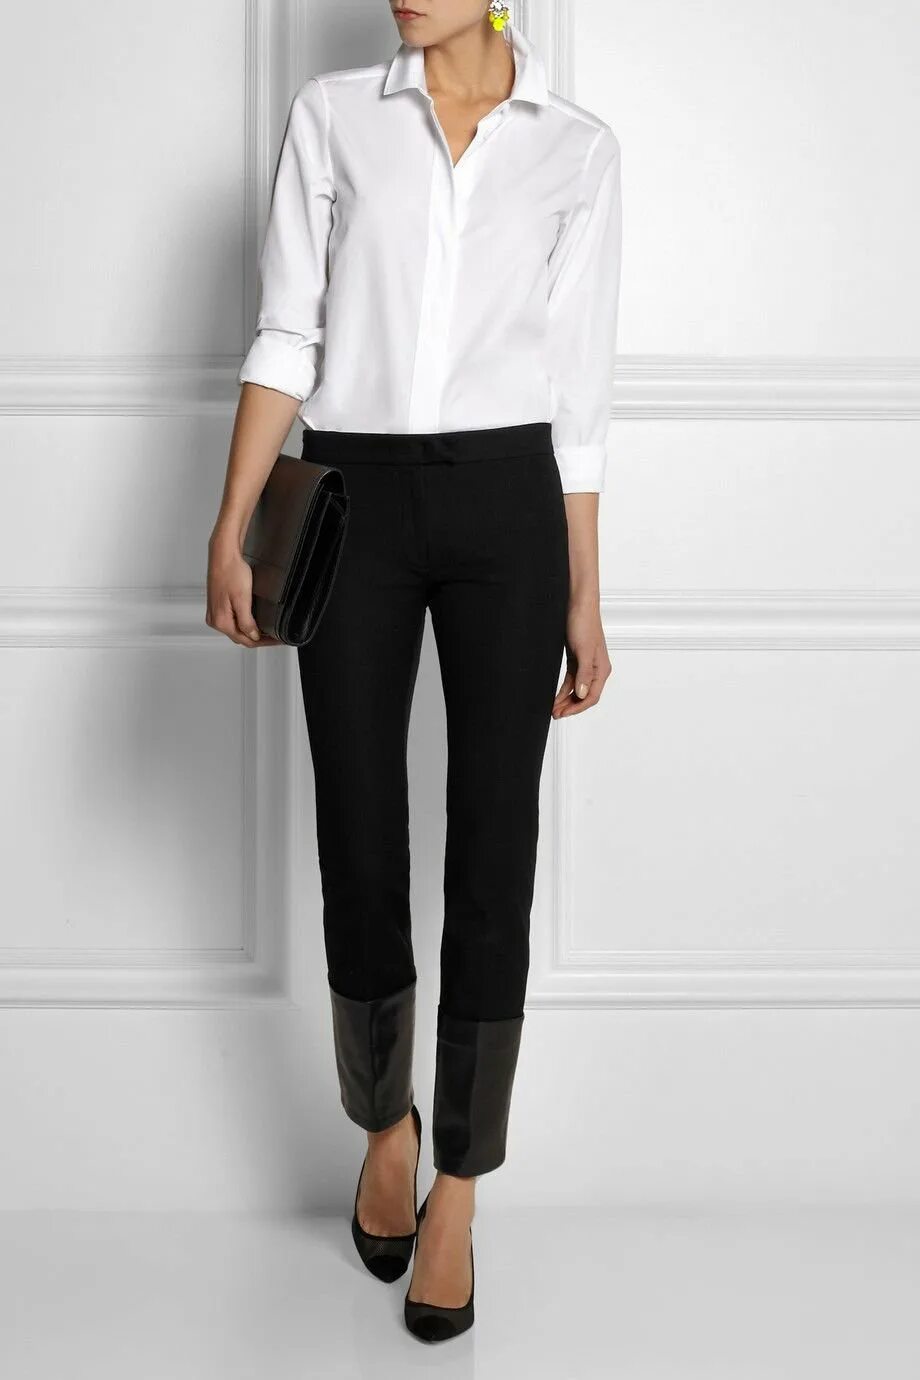 Белая кофта черные штаны. Блузка с черными брюками. Белая рубашка и брюки женские. Белая рубашка и черные брюки женские. Белая блузкачерныые брюки.